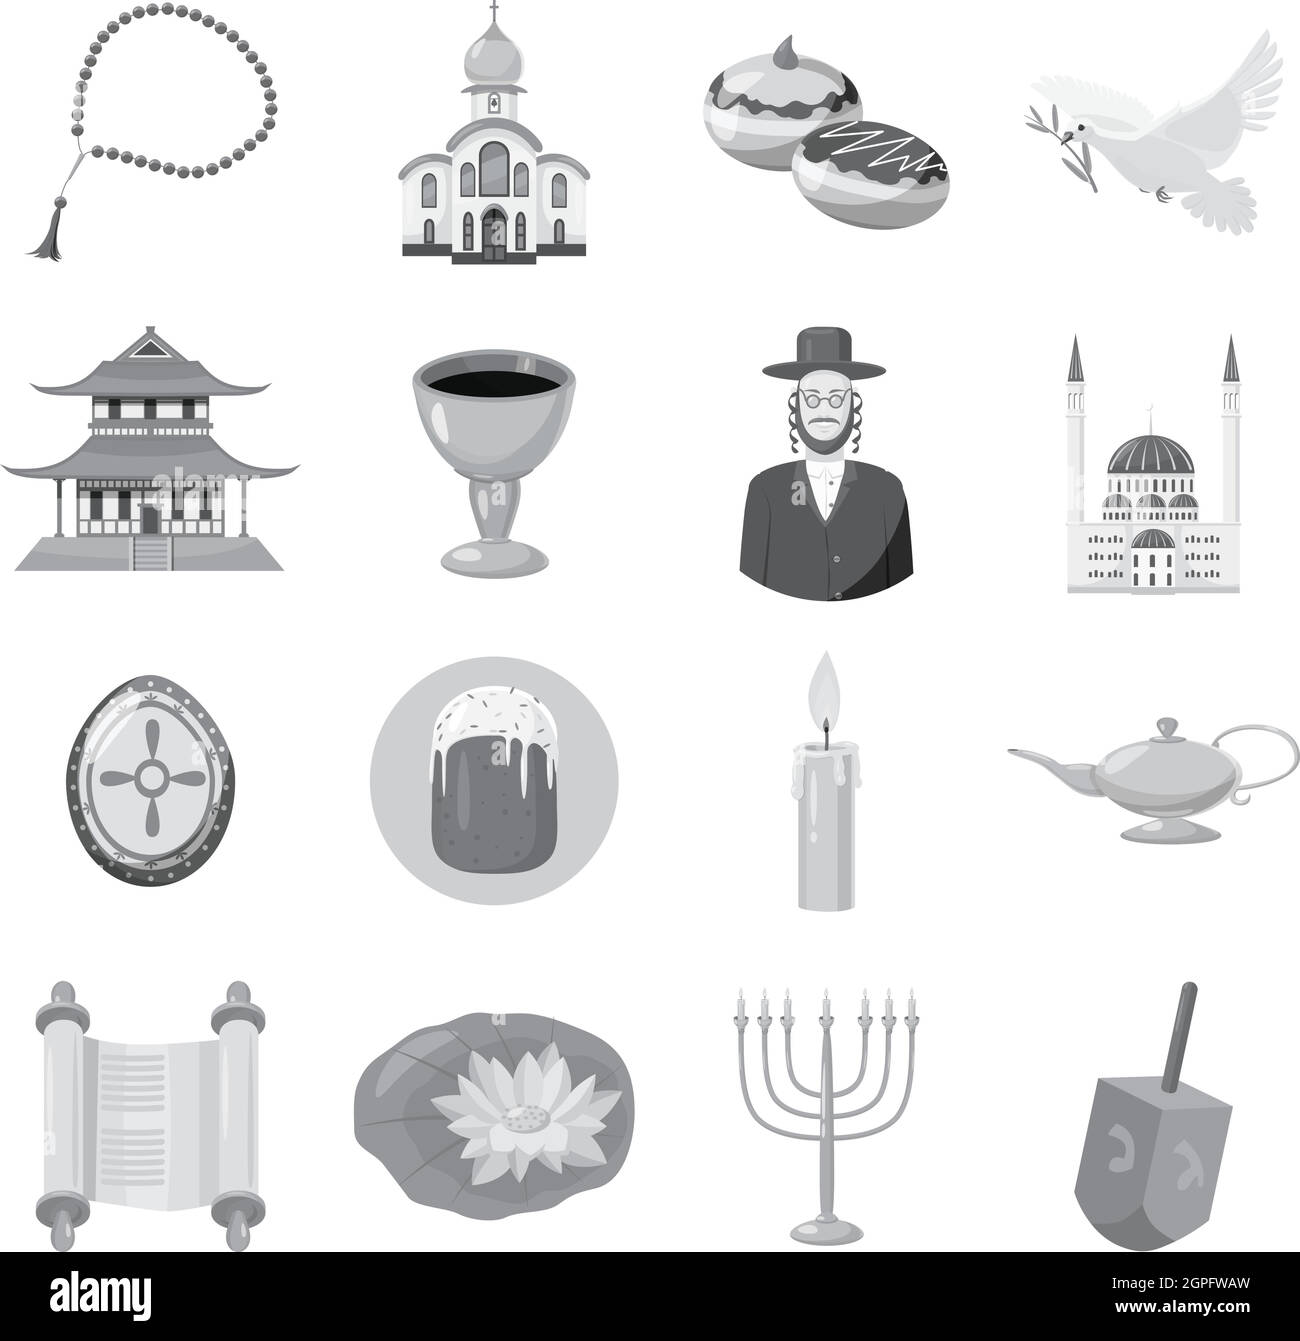 Le judaïsme église symboles traditionnels icons set Illustration de Vecteur